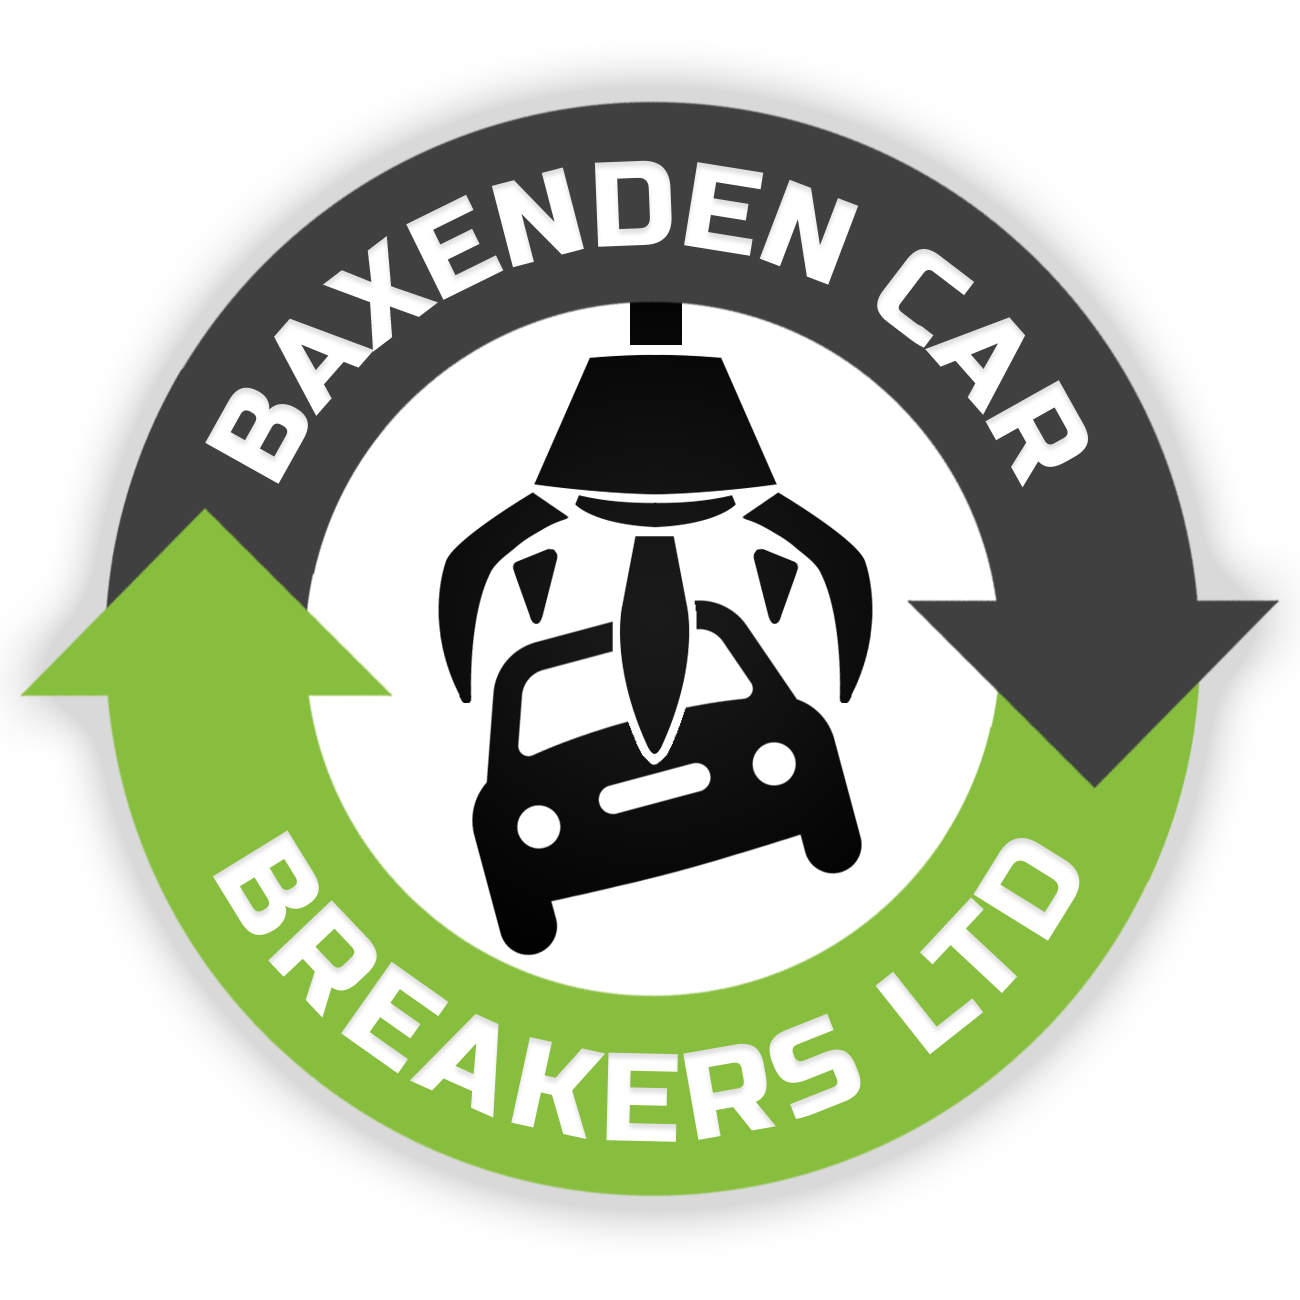 Baxenden Car Breakers